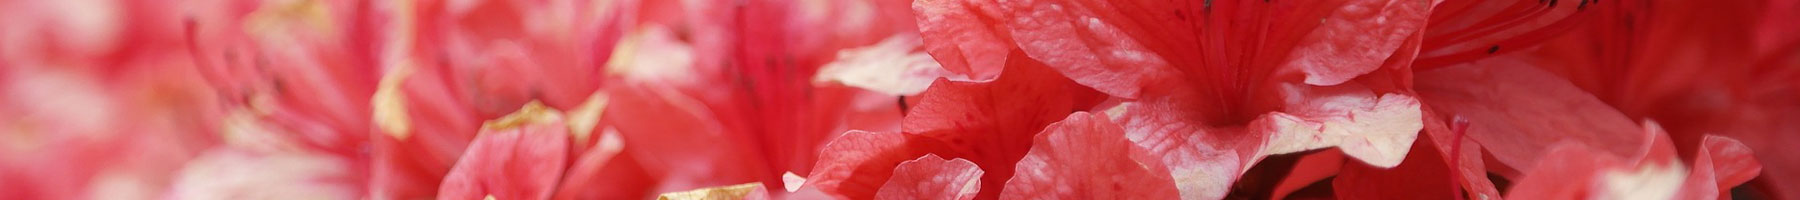 Red Azalea Flowers